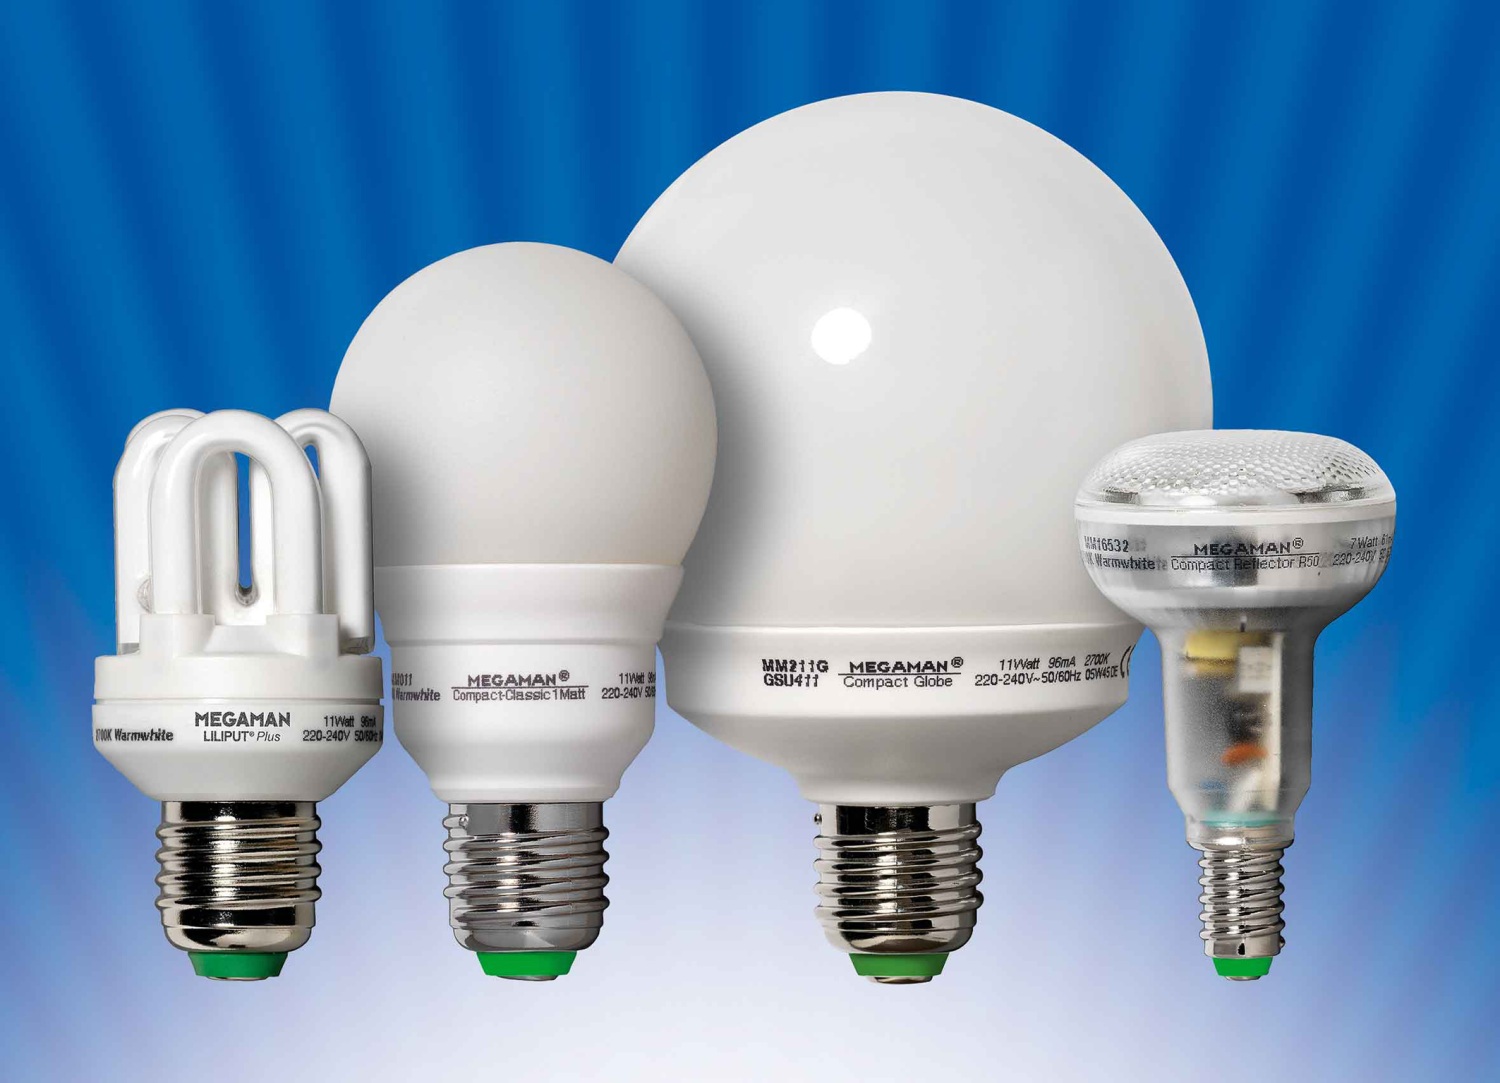 Разновидности энергосберегающих ламп